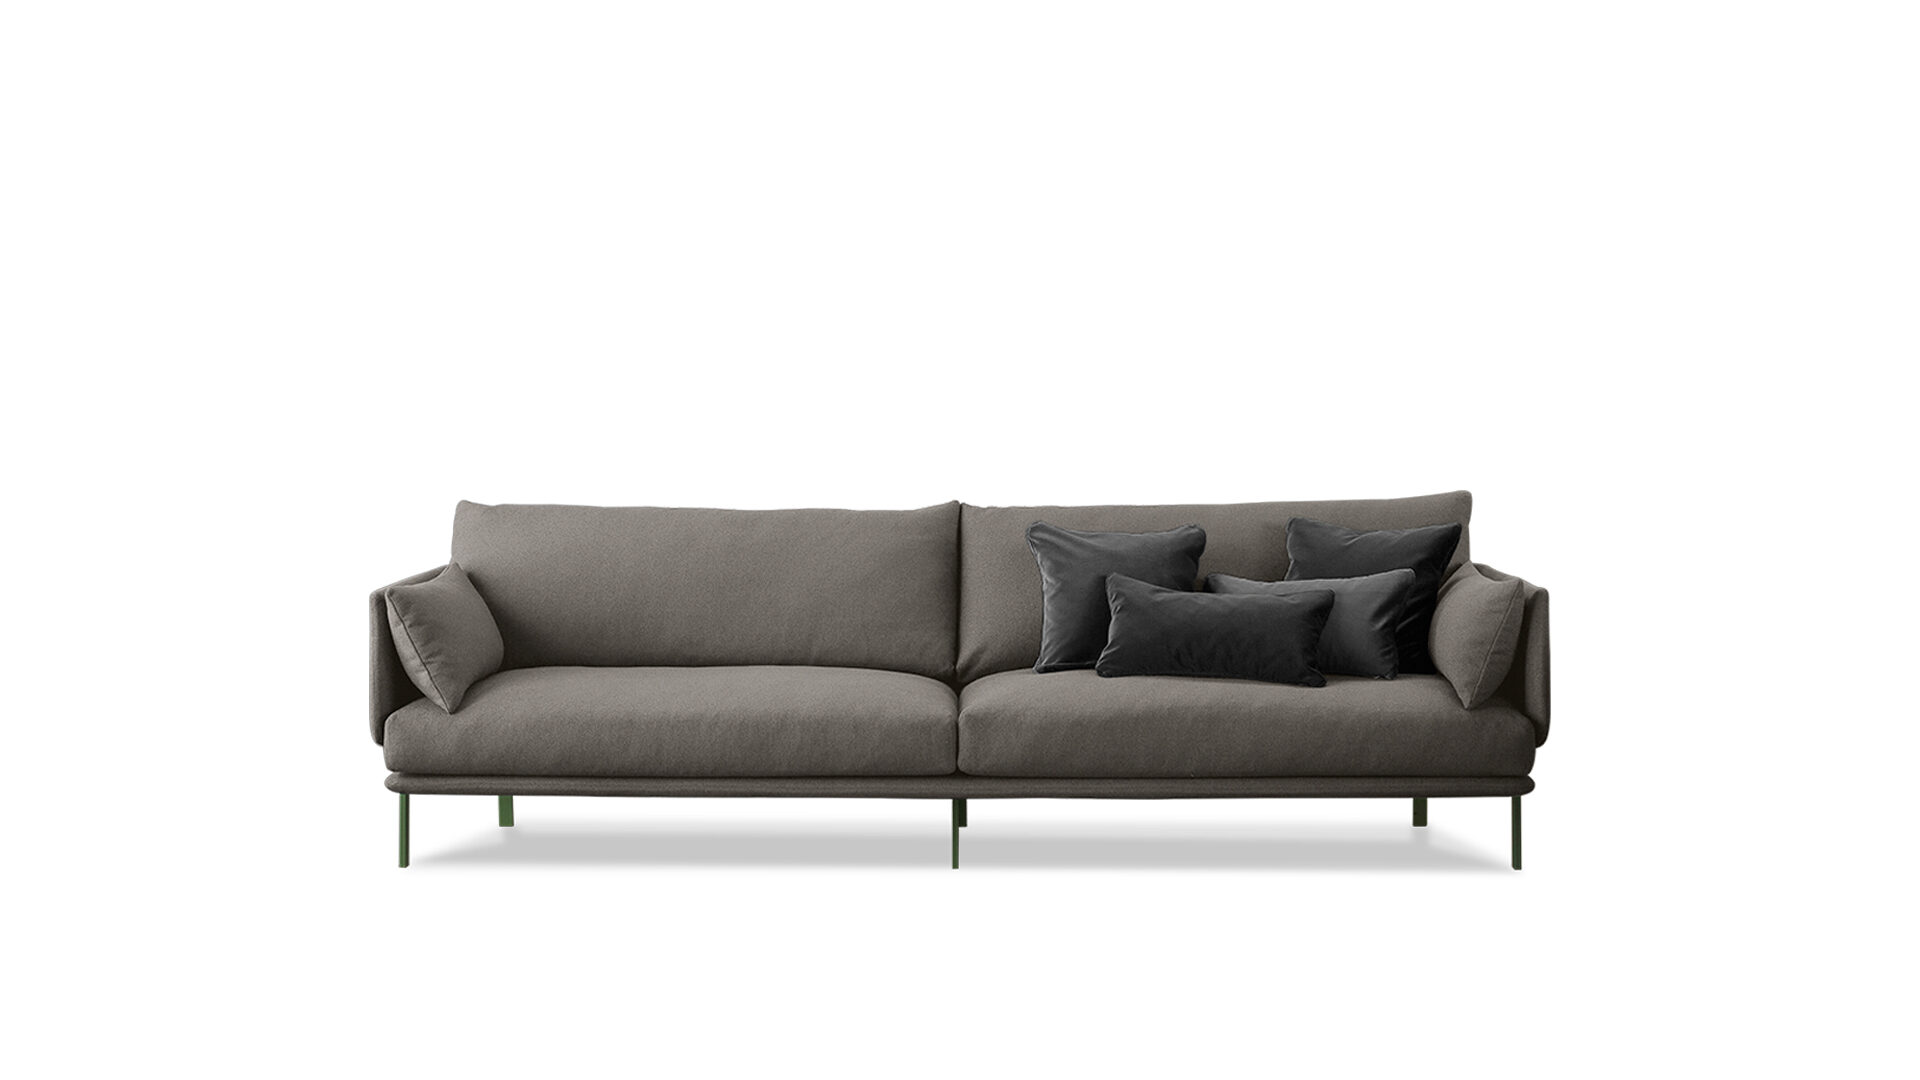 bonaldo-divani-structure-sofa-main-slider-01-1920x1080-jpg